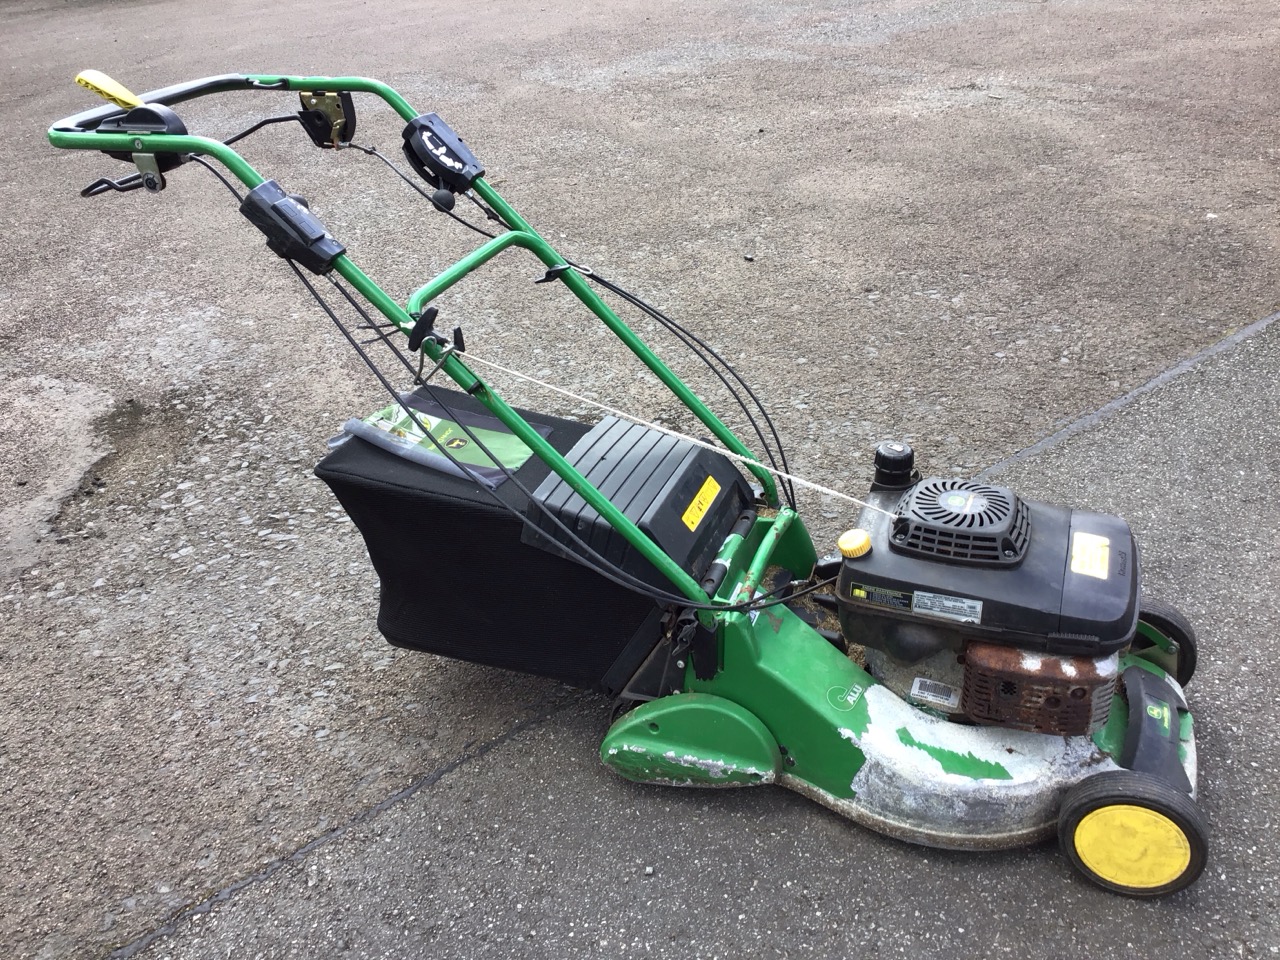 A John Deere rotary garden mower with adjustable cutter, grassbox, roller, etc. (A/F) - Image 3 of 3